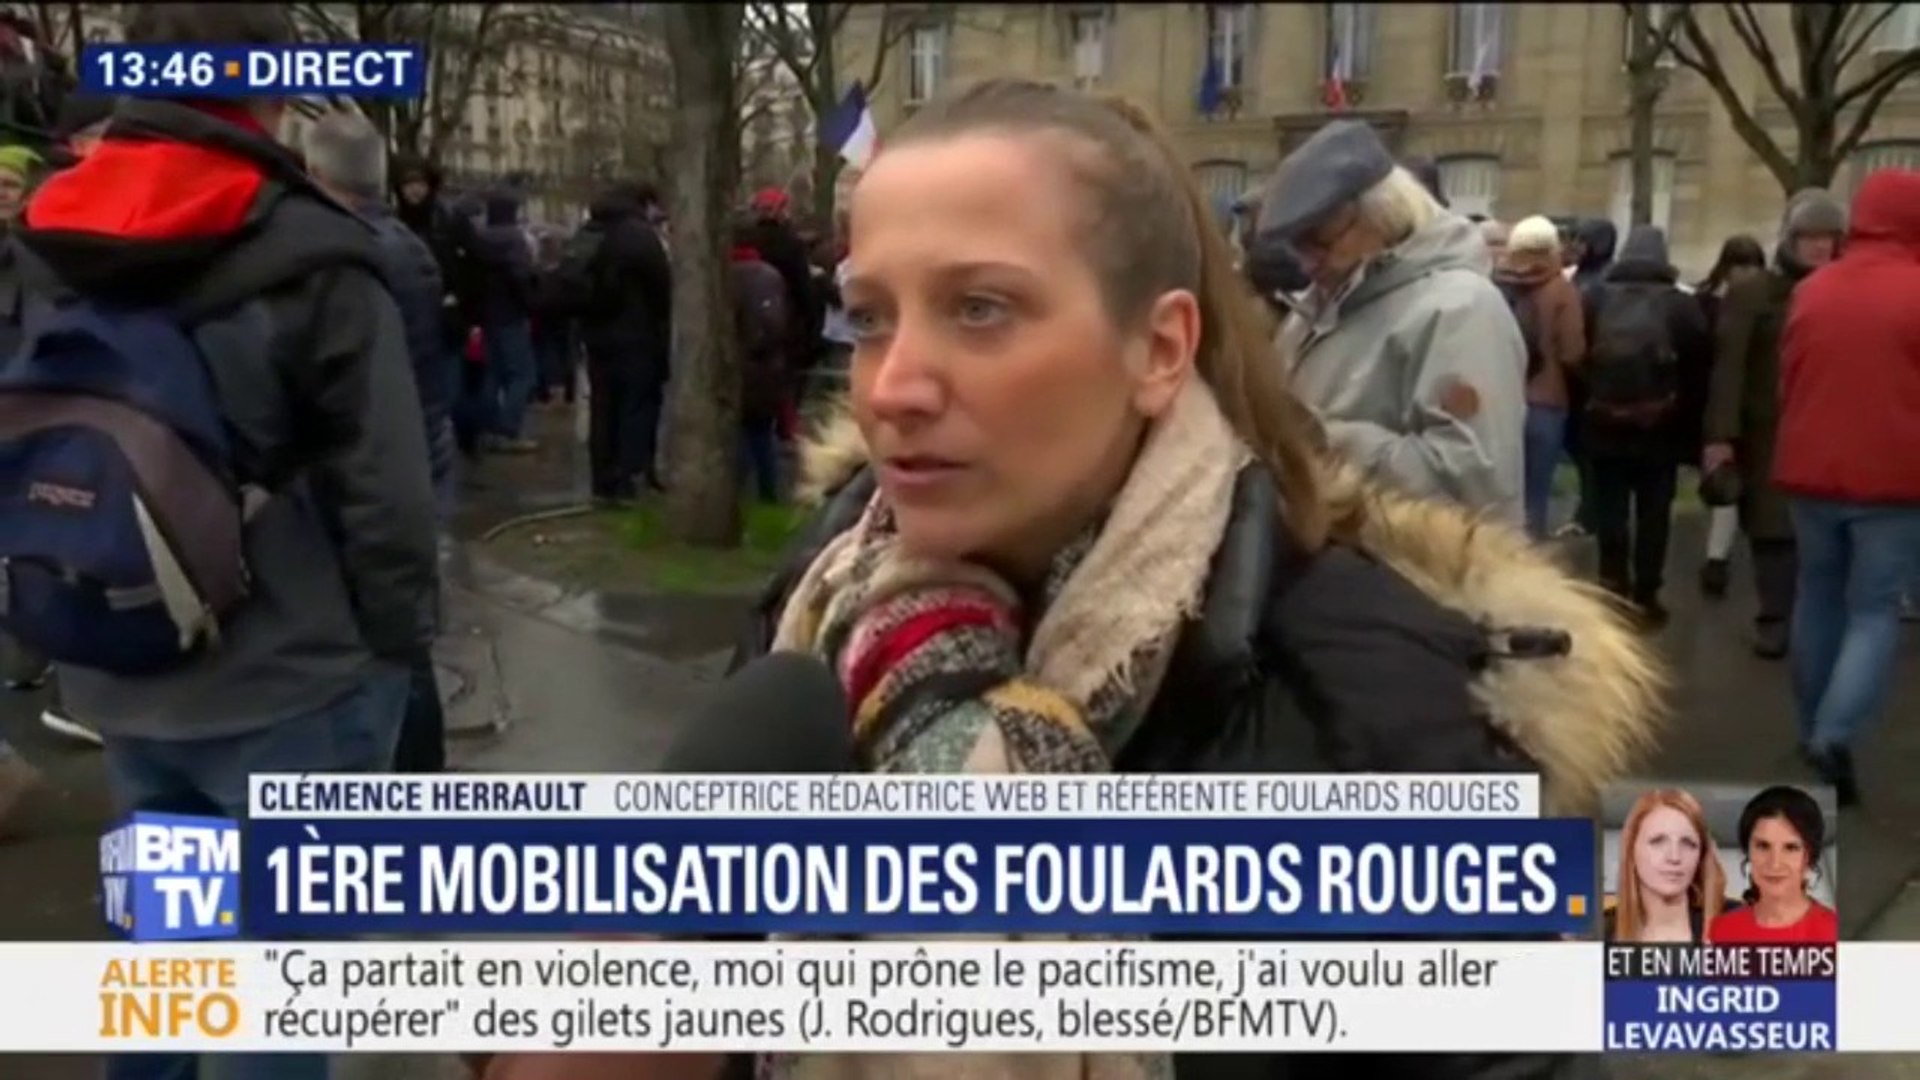 Clémence, référente "foulards rouges" affirme: "le mouvement est  apolitique" - Vidéo Dailymotion